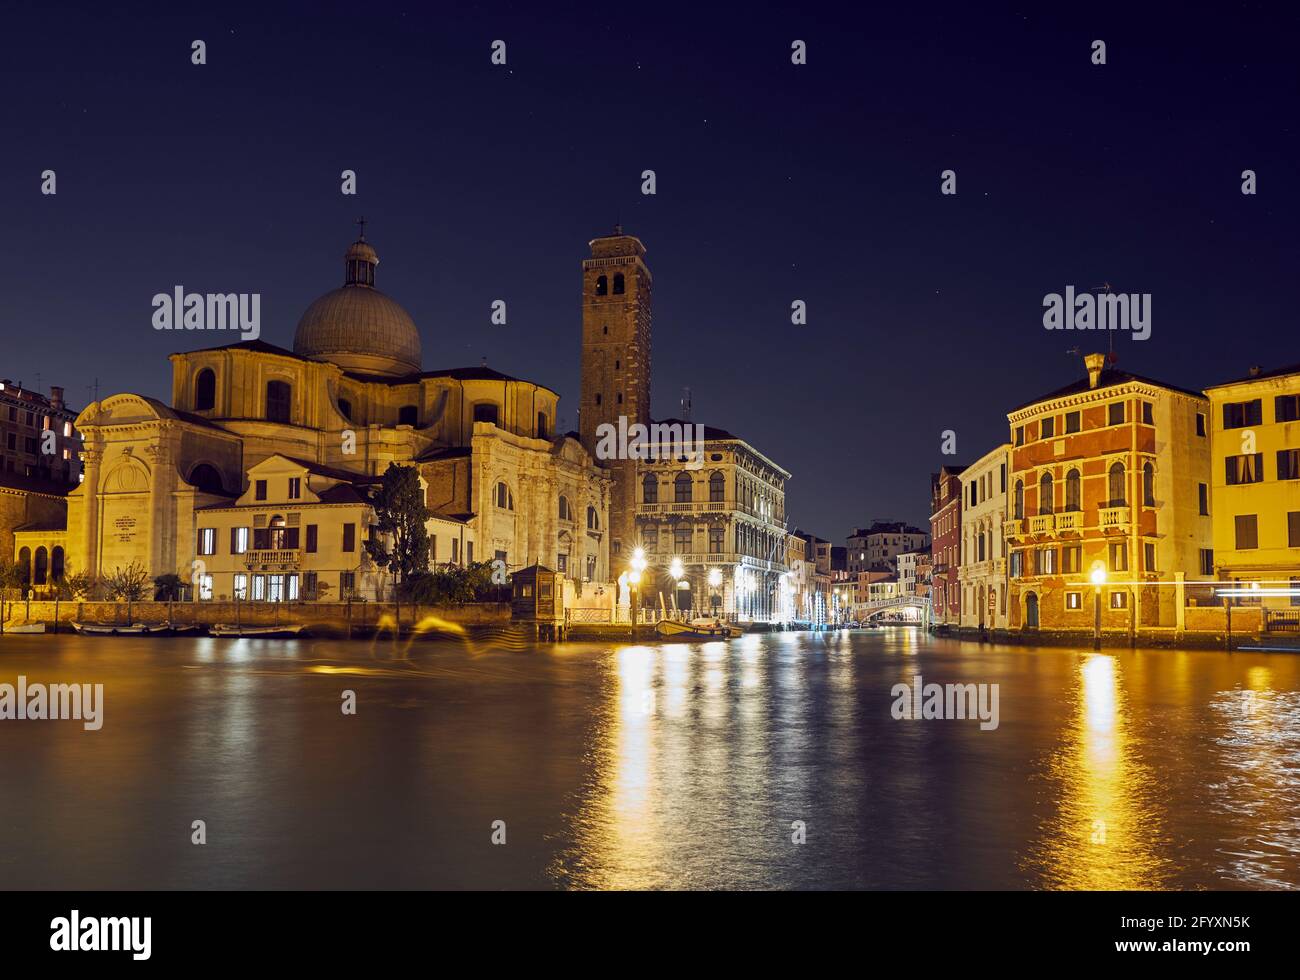 Chiesa di San Geremia église catholique la nuit, Venise, Italie, 2017 Banque D'Images